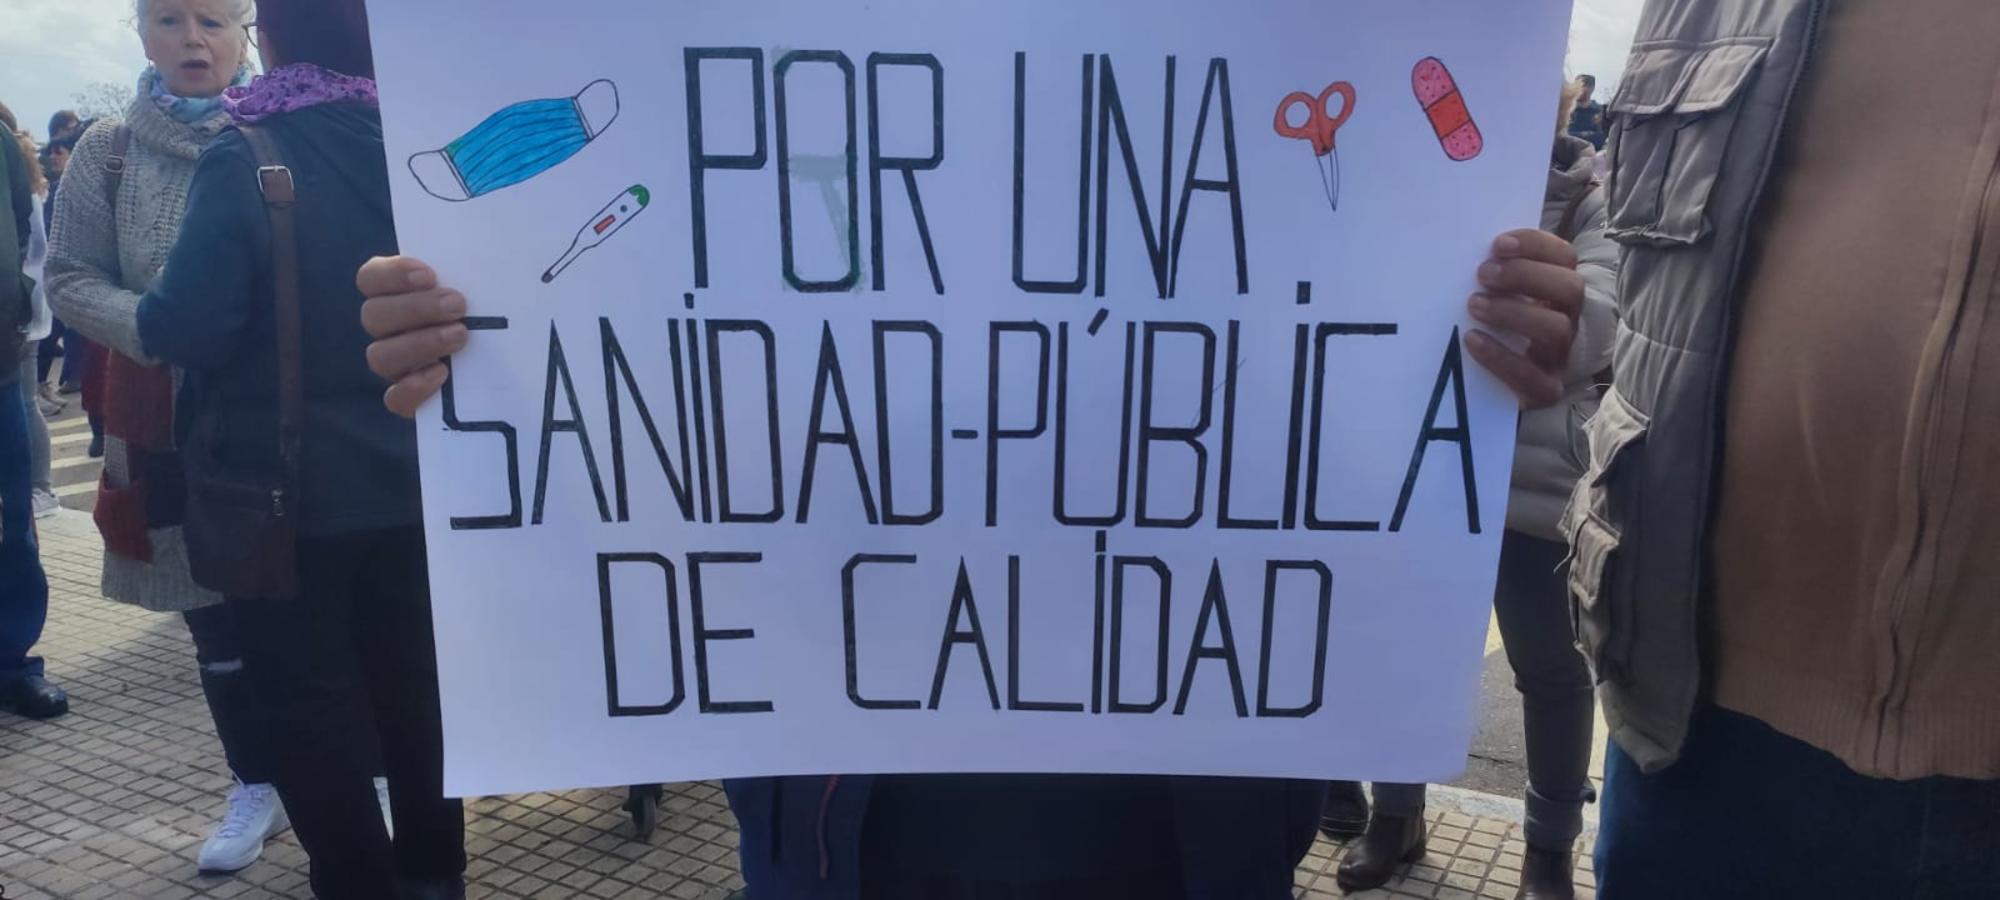 En defensa de la sanidad pública en Extremadura